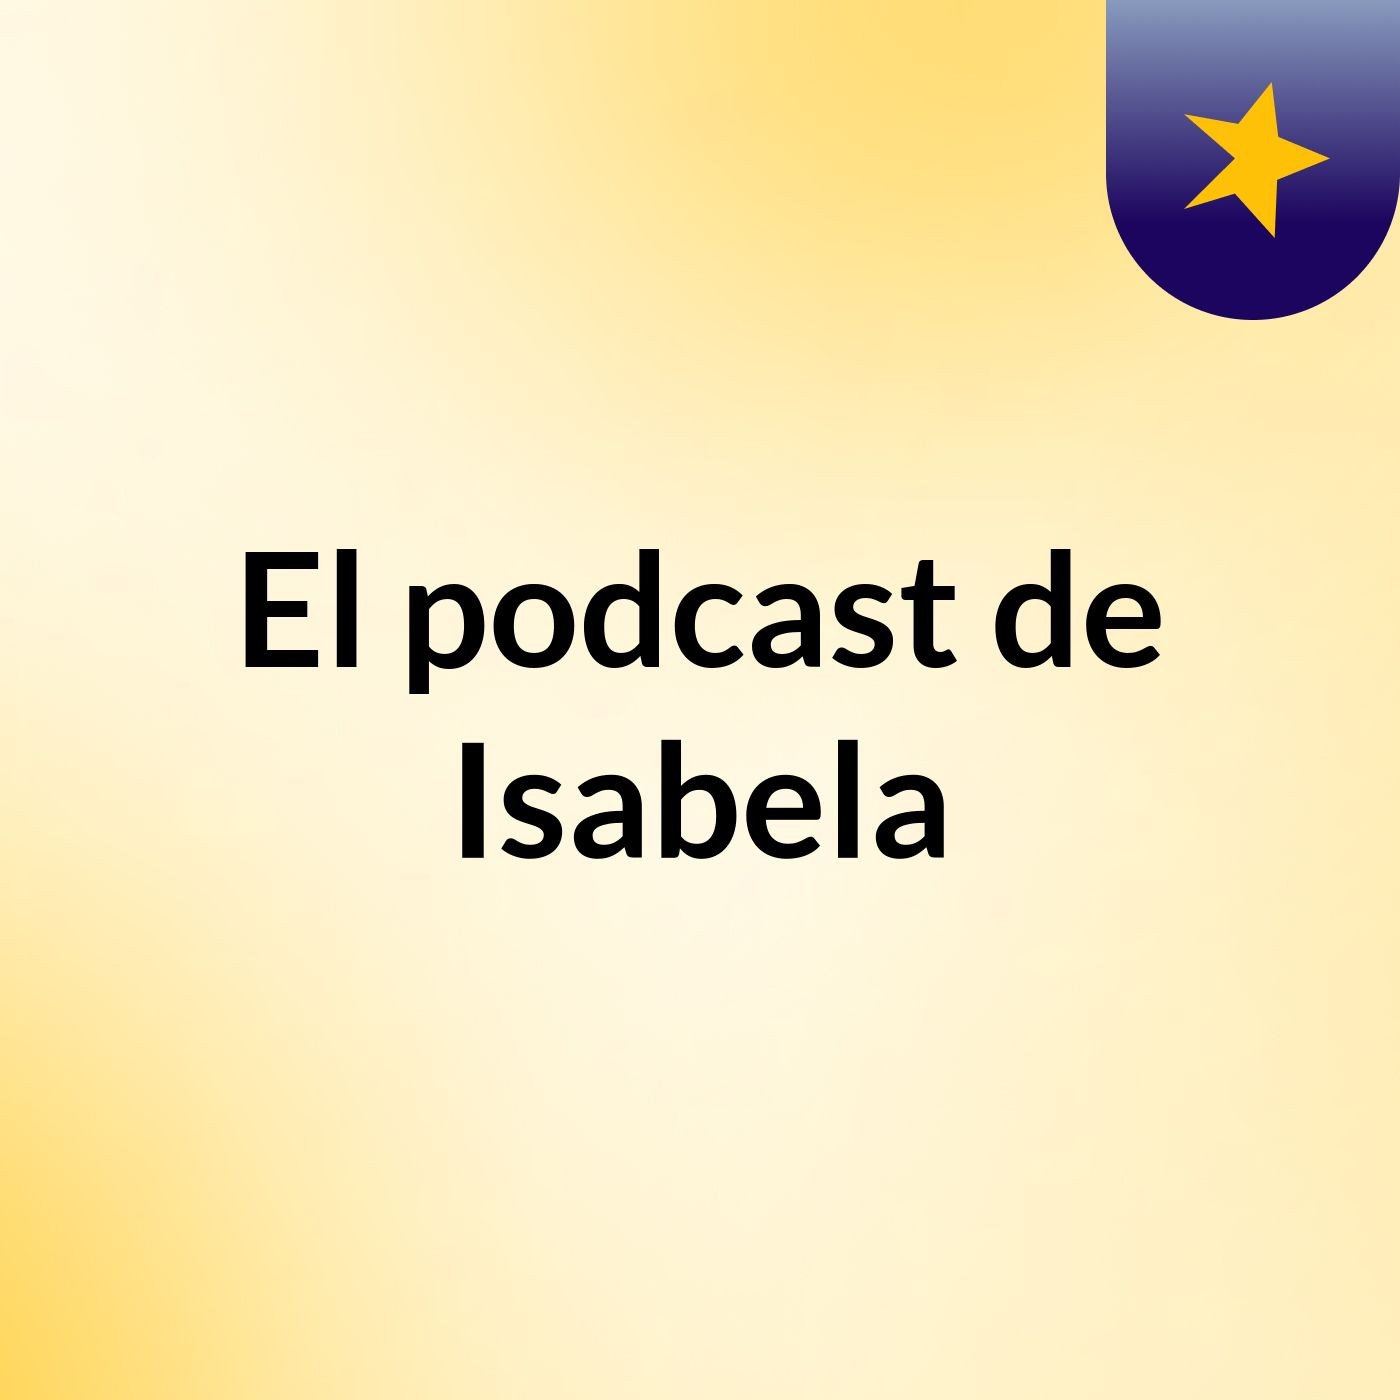 El podcast de Isabela